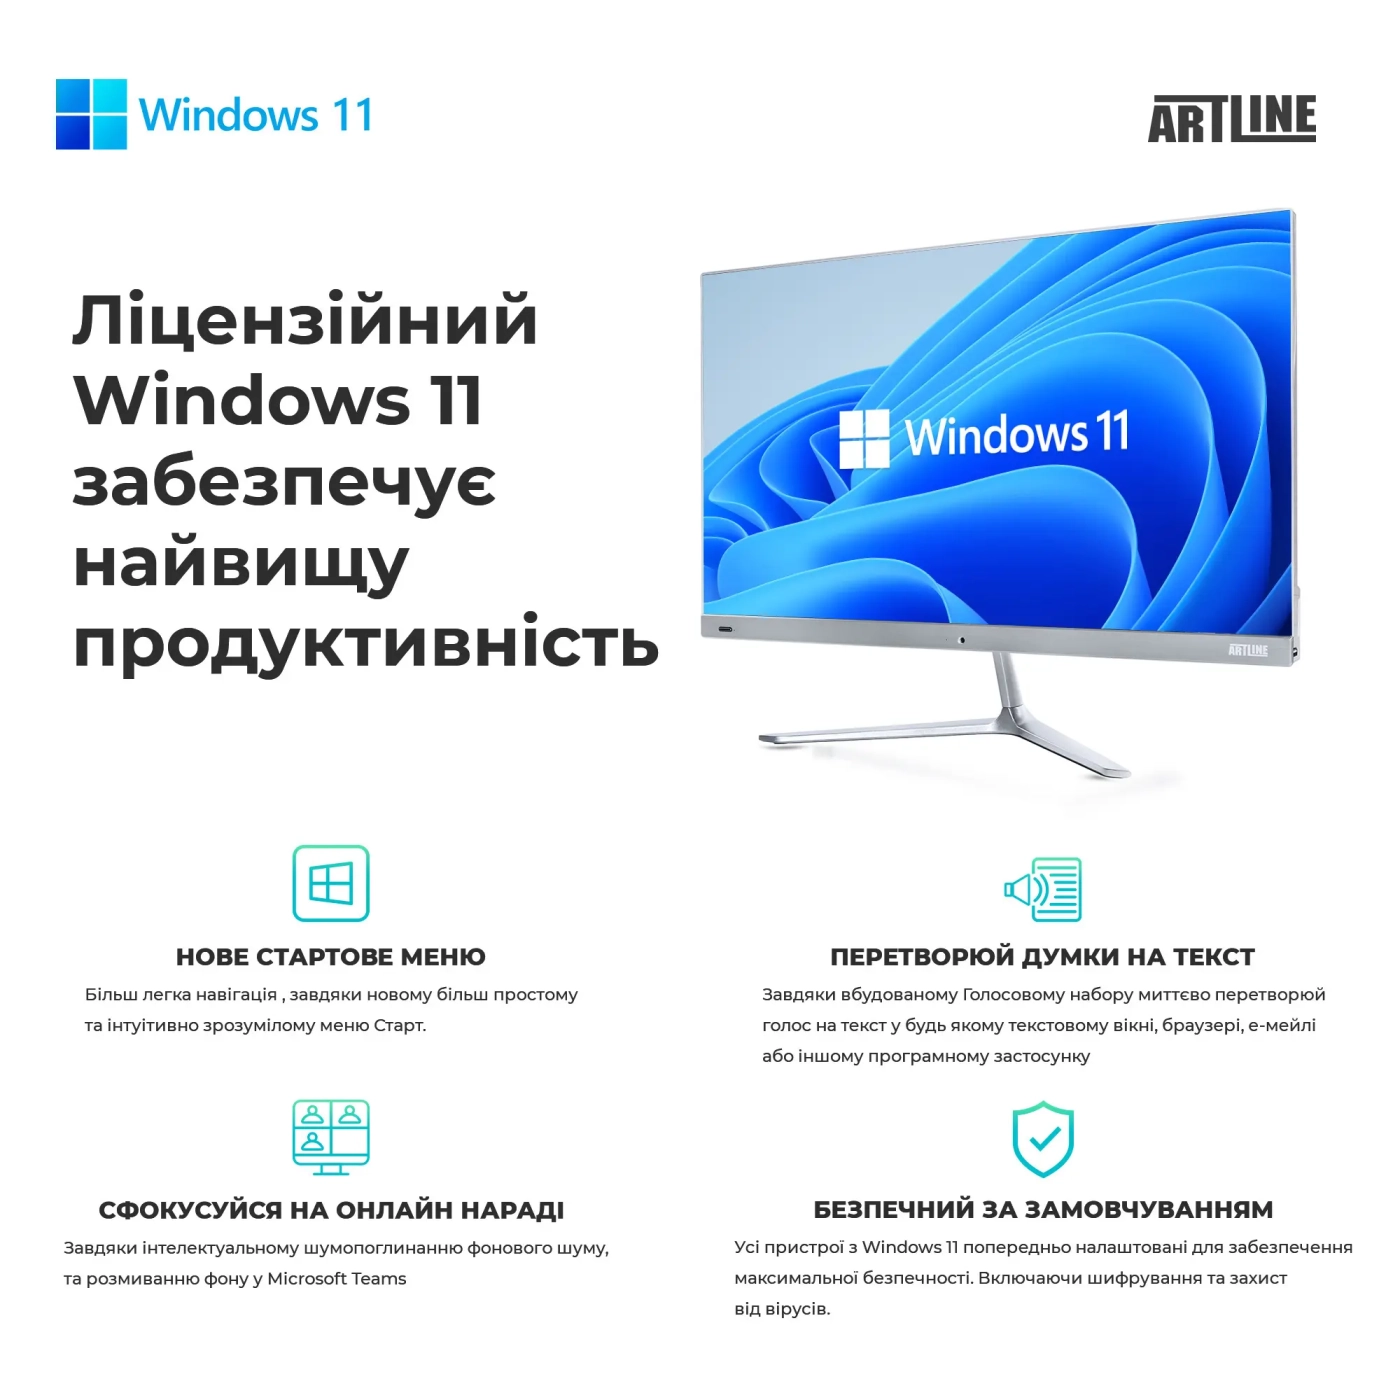 Купить Рабочая станция ARTLINE WorkStation W52 Windows 11 Pro (W52v21Win) - фото 6